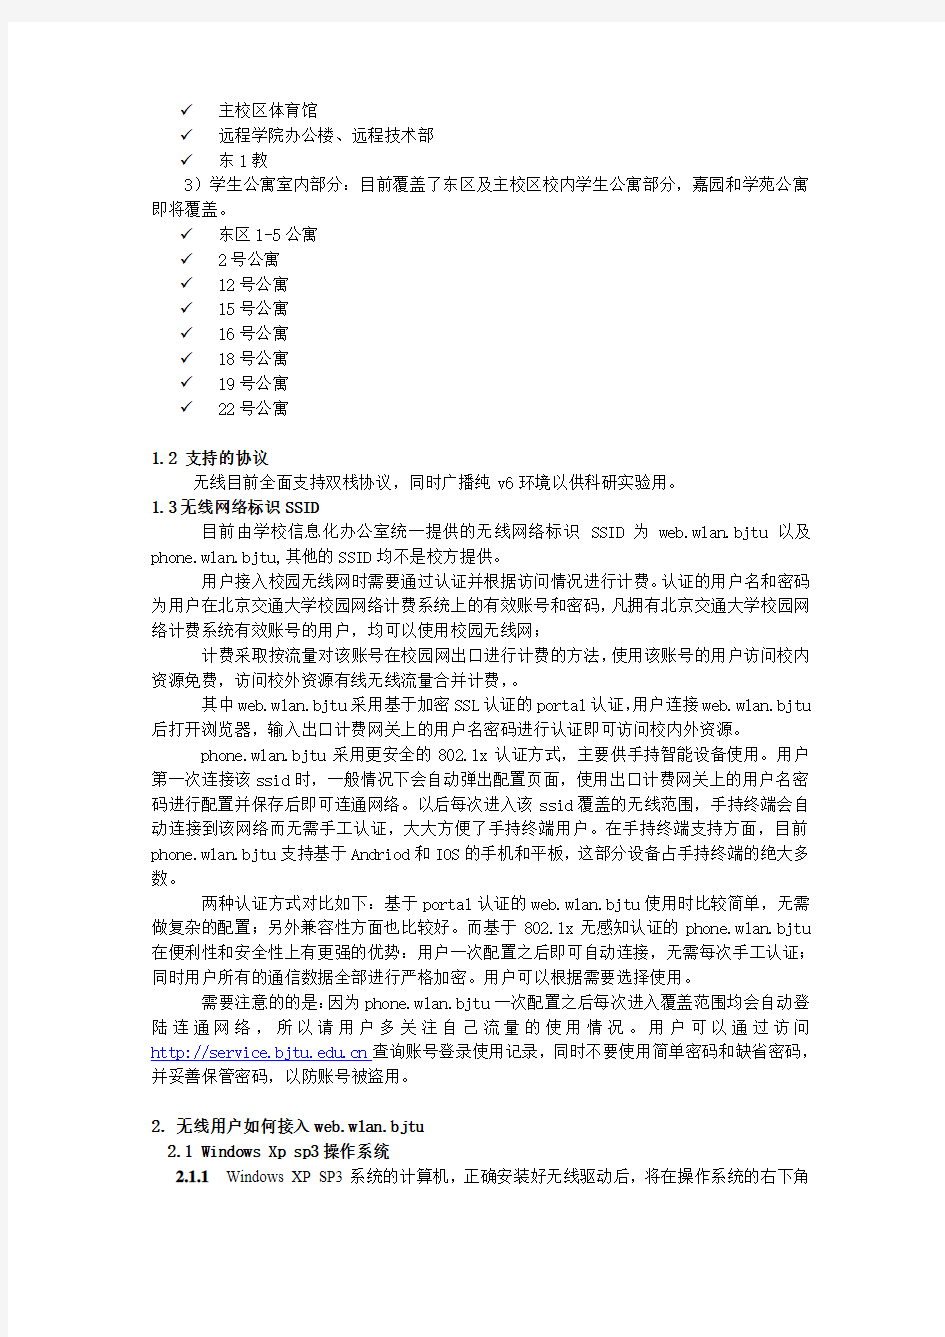 北京交通大学校园无线网络使用指南(2014)-BJTU